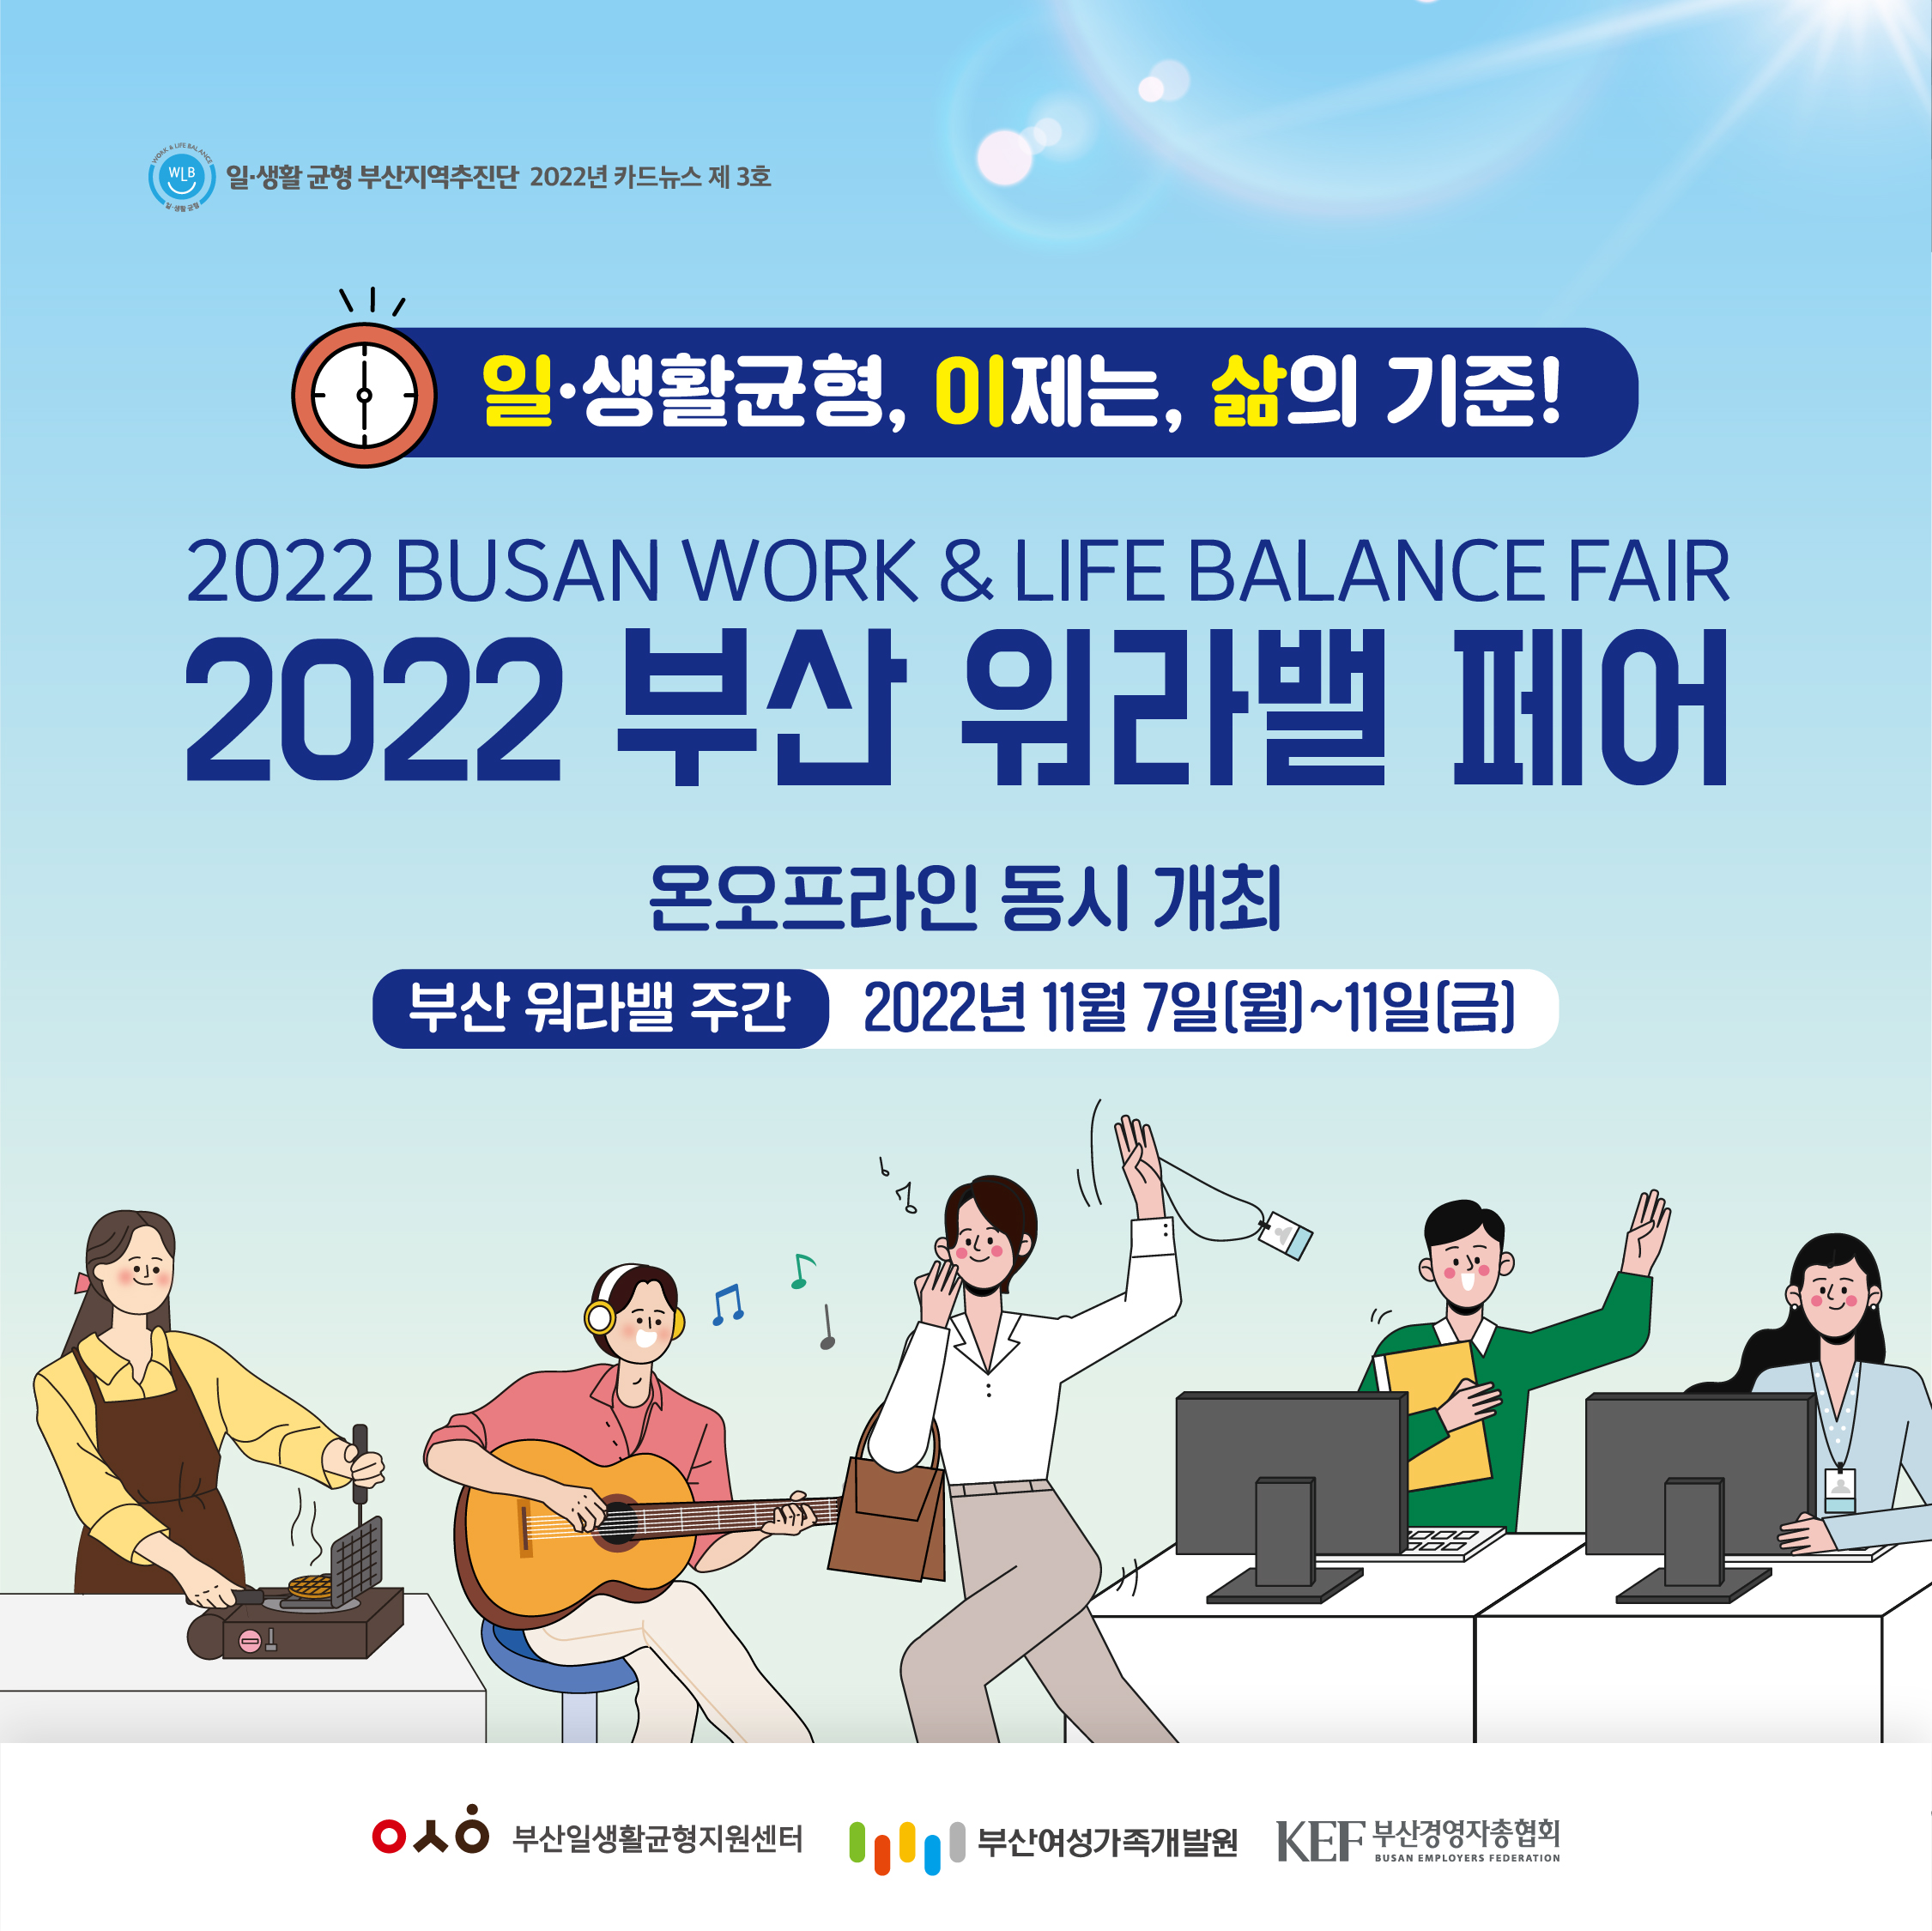 2022 부산 워라밸 페어 홍보카드뉴스 1장